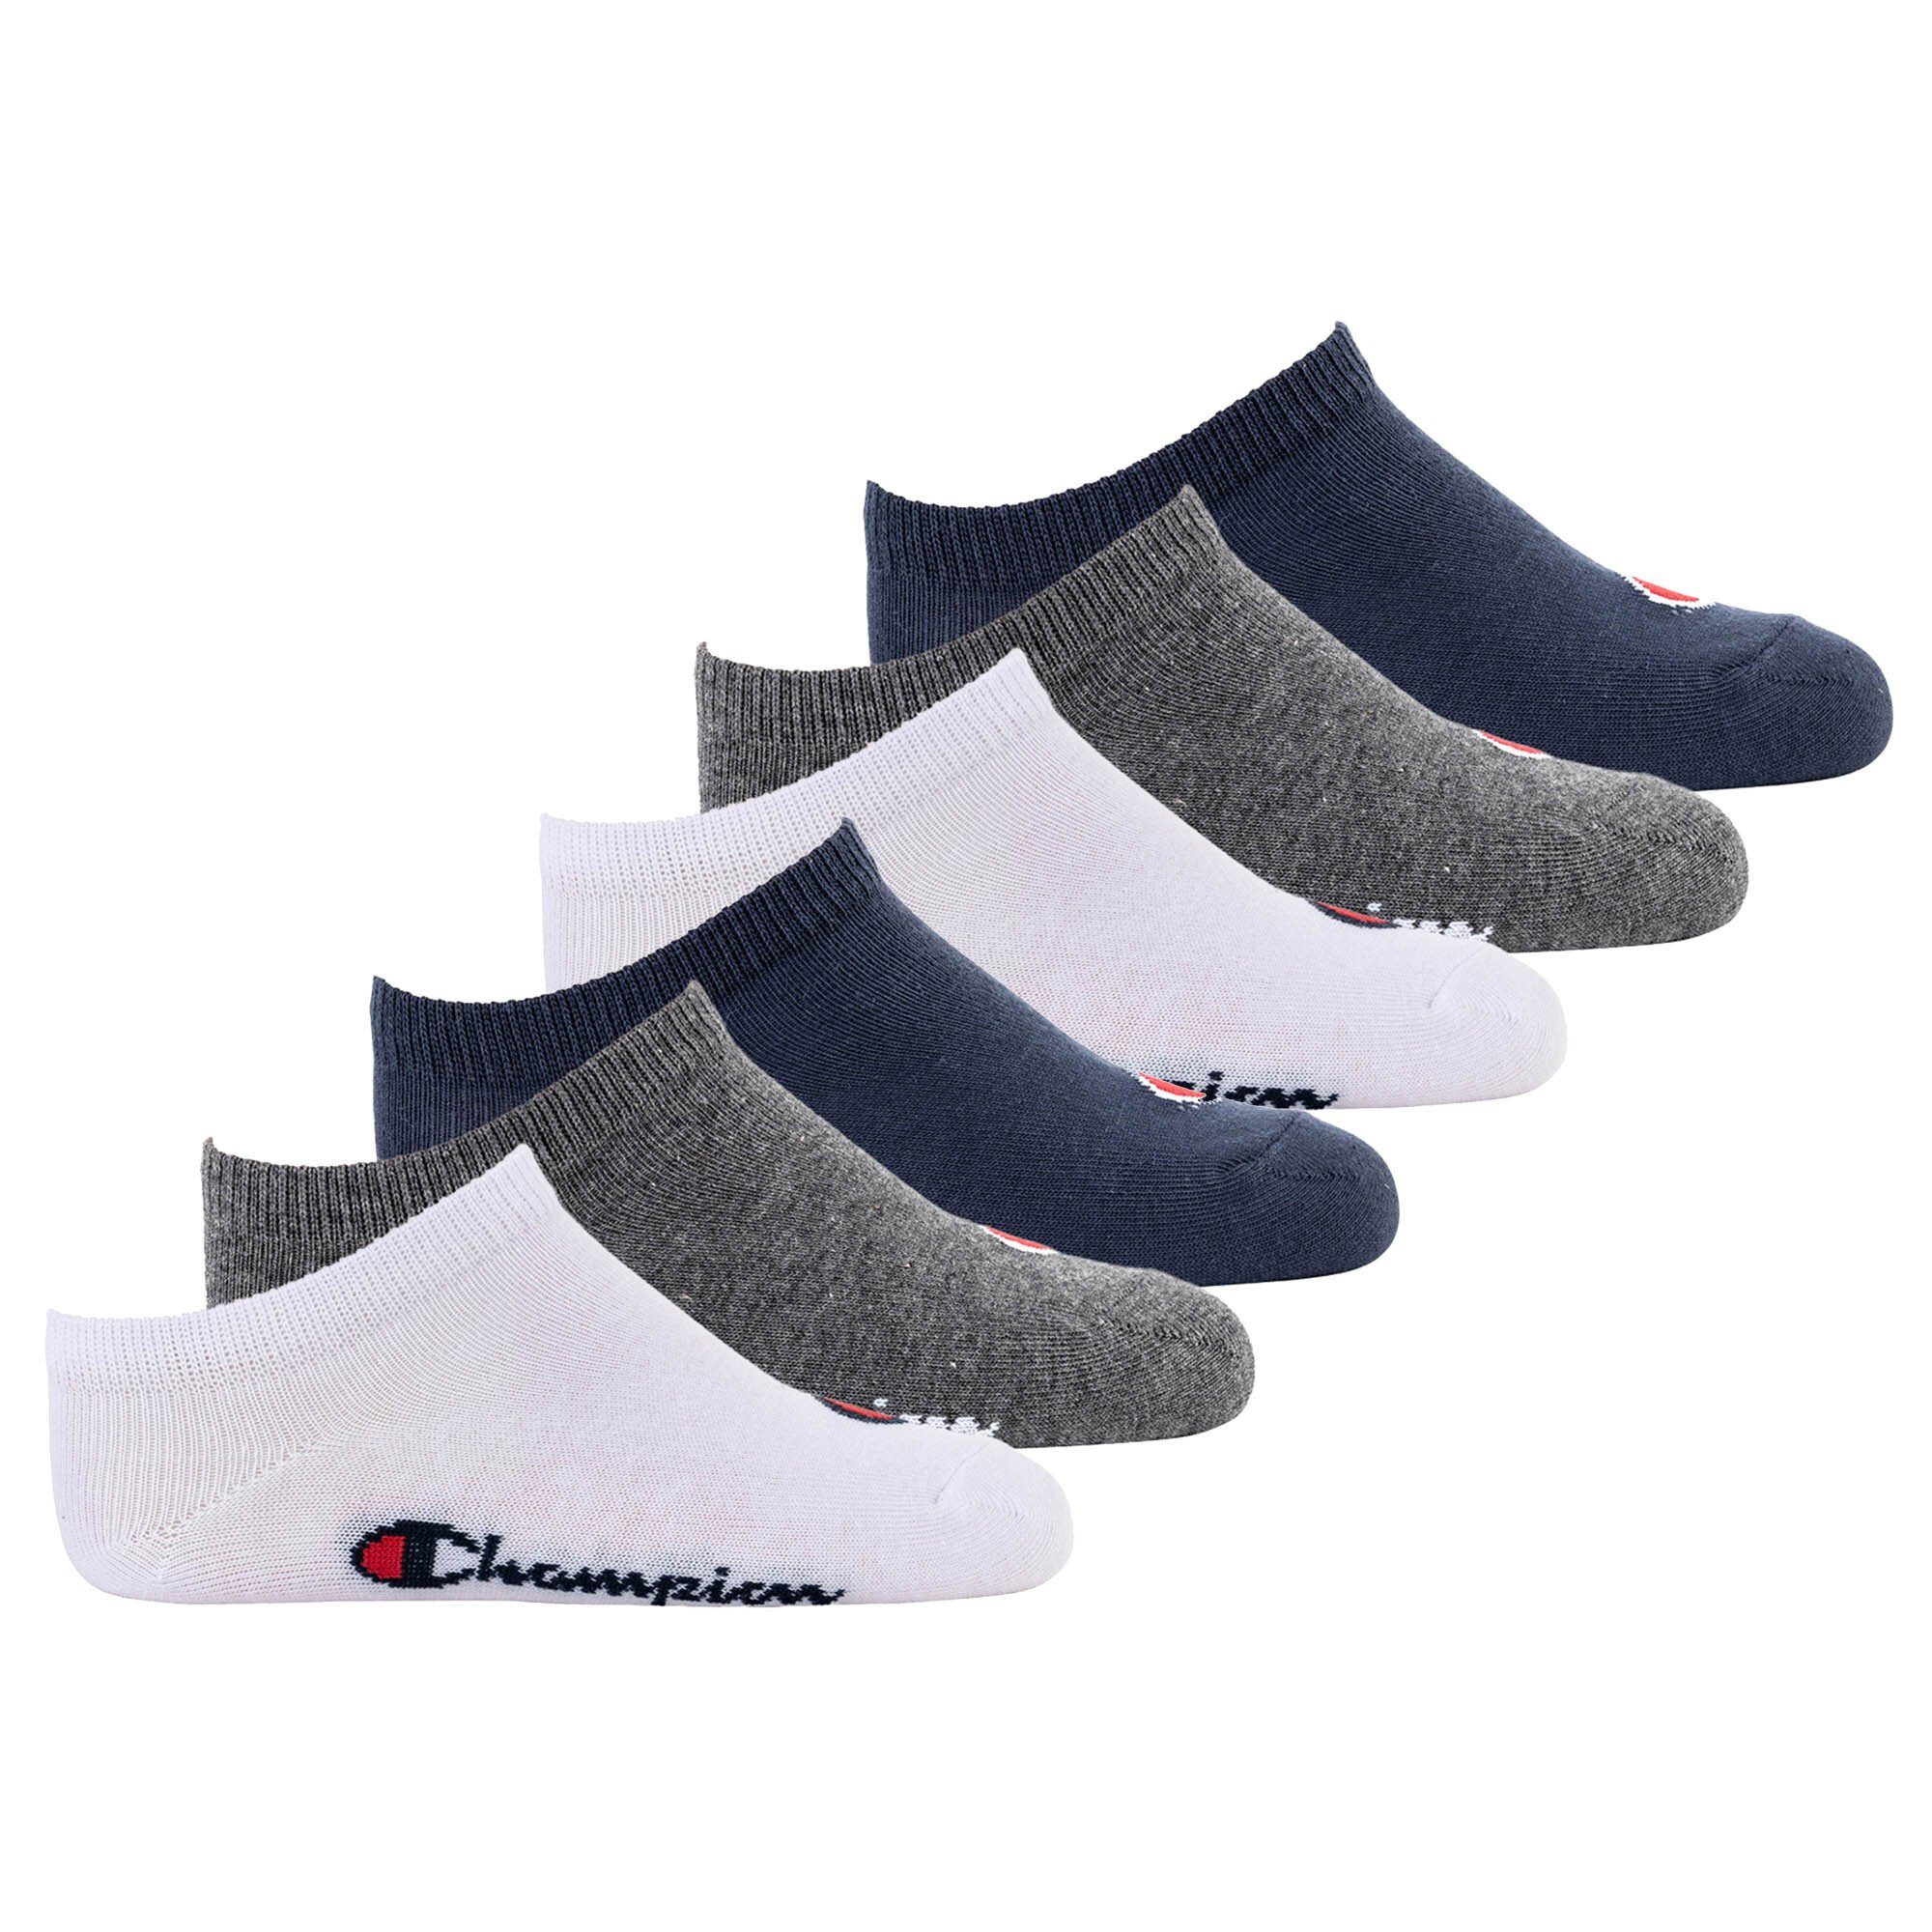 Champion Freizeitsocken Kinder Socken, 6er Pack- Crew Socken, einfarbig Blau/Weiß/Grau